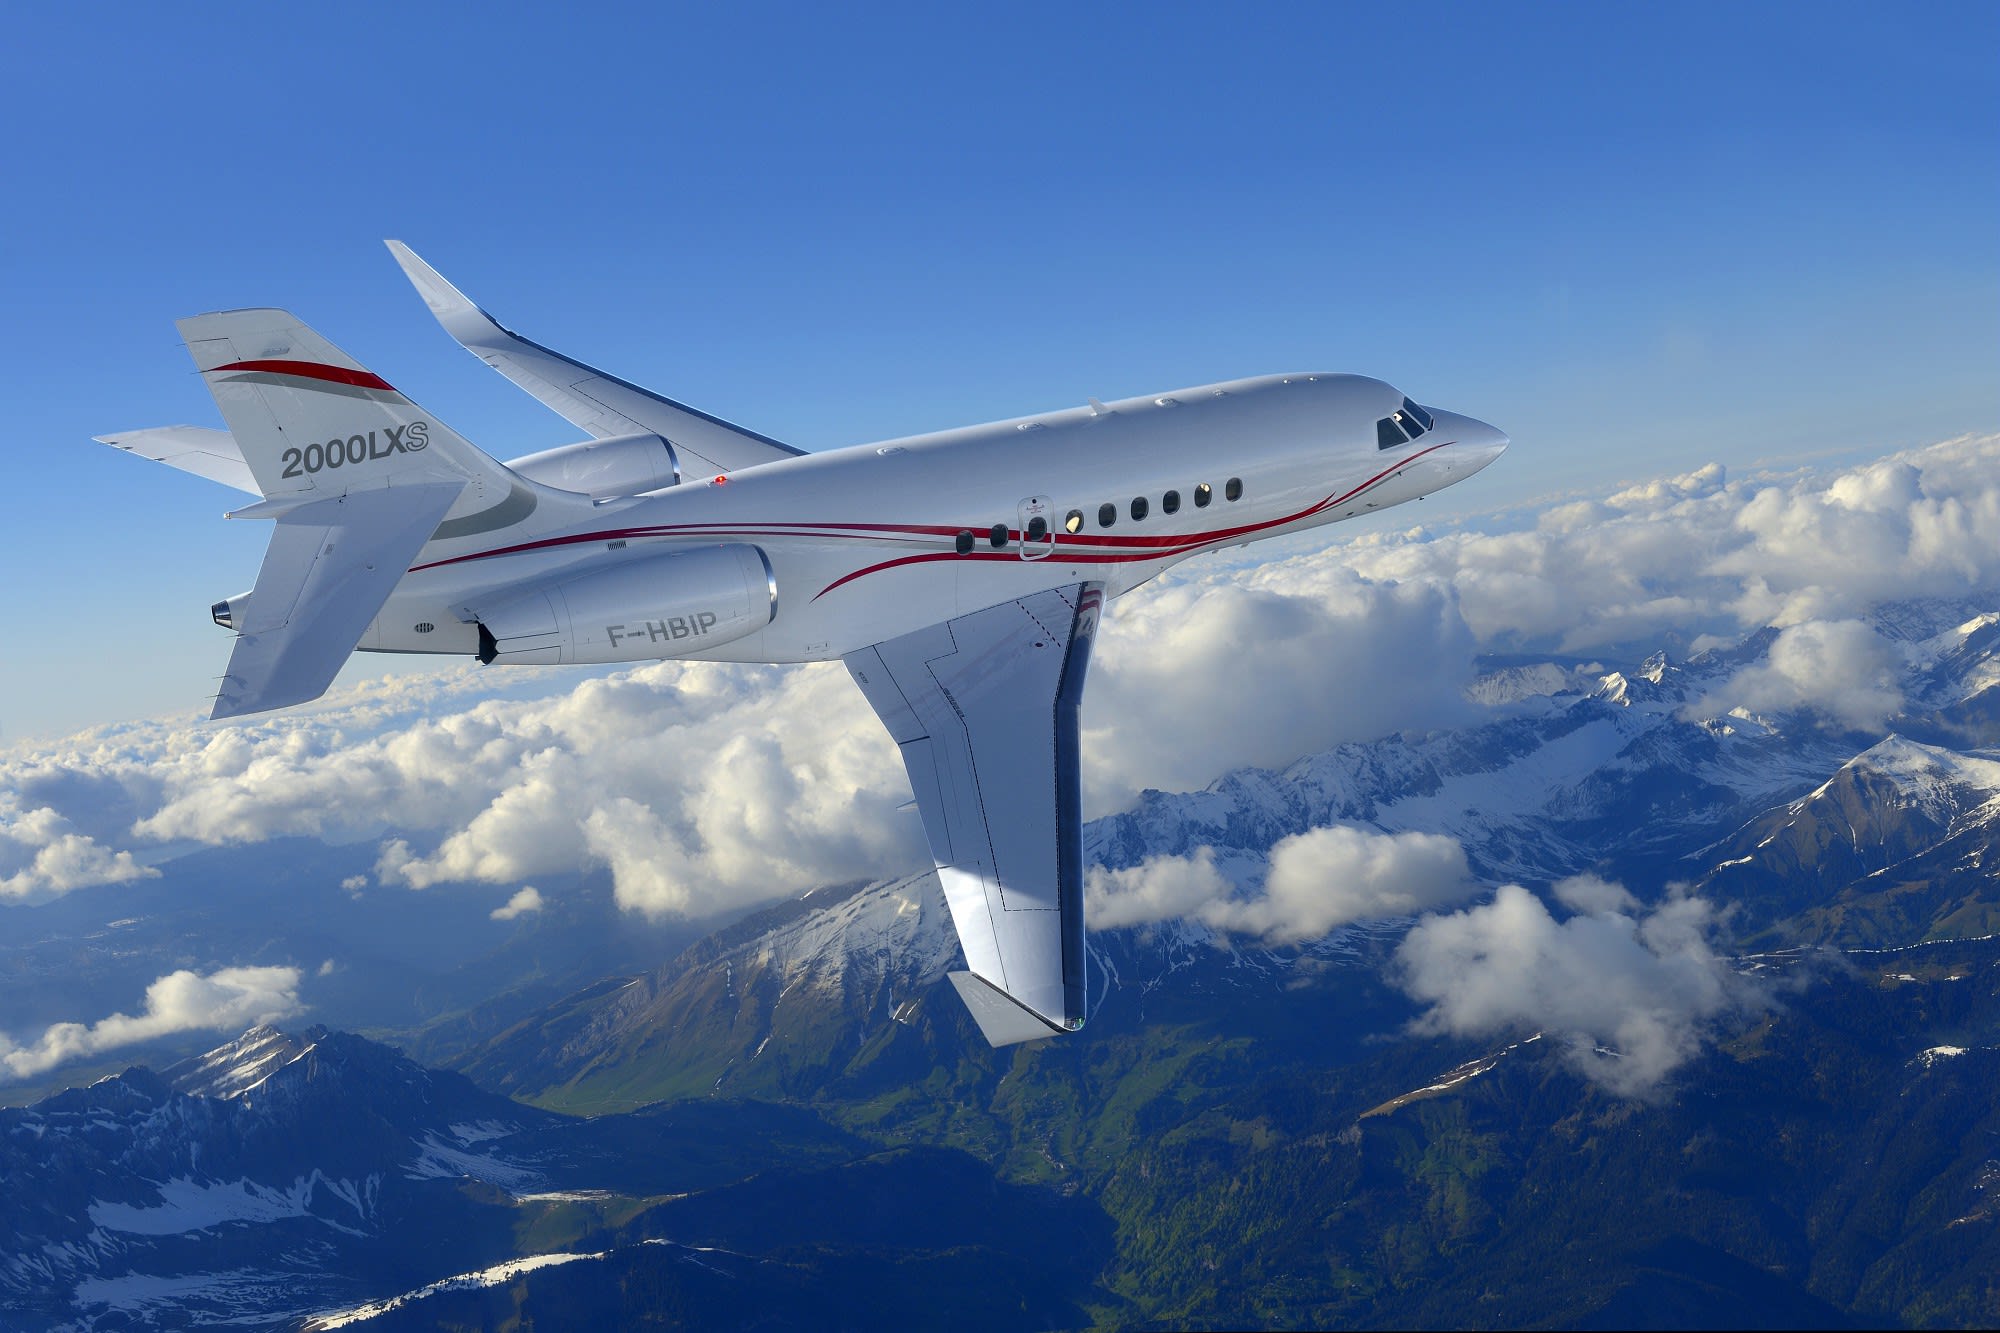 Falcon 2000LXS : performances améliorées et confort cabine supérieur